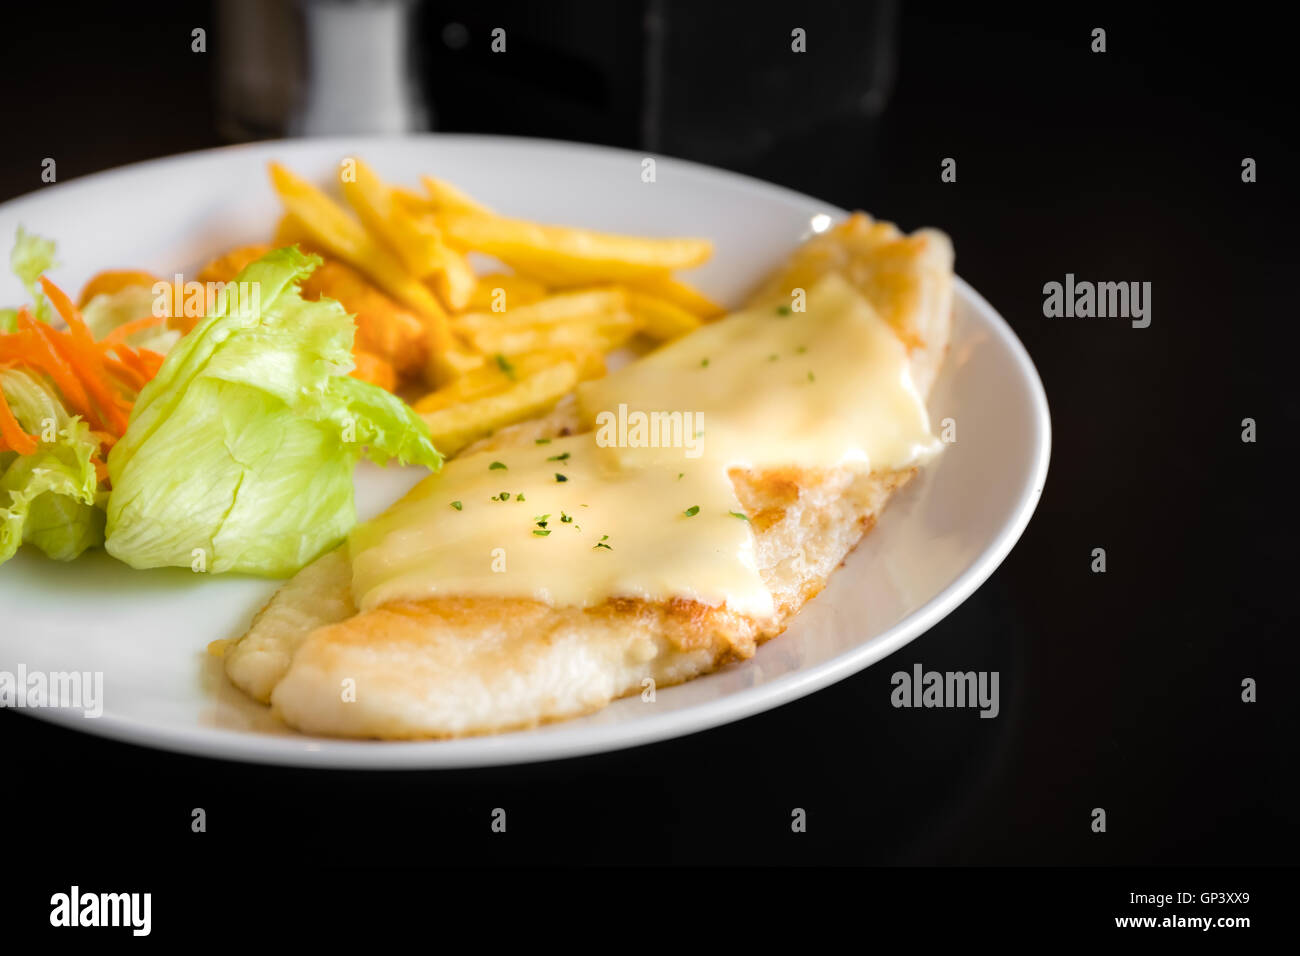 Filete de pescado a la parrilla con ensalada de verduras y patatas fritas. Foto de stock